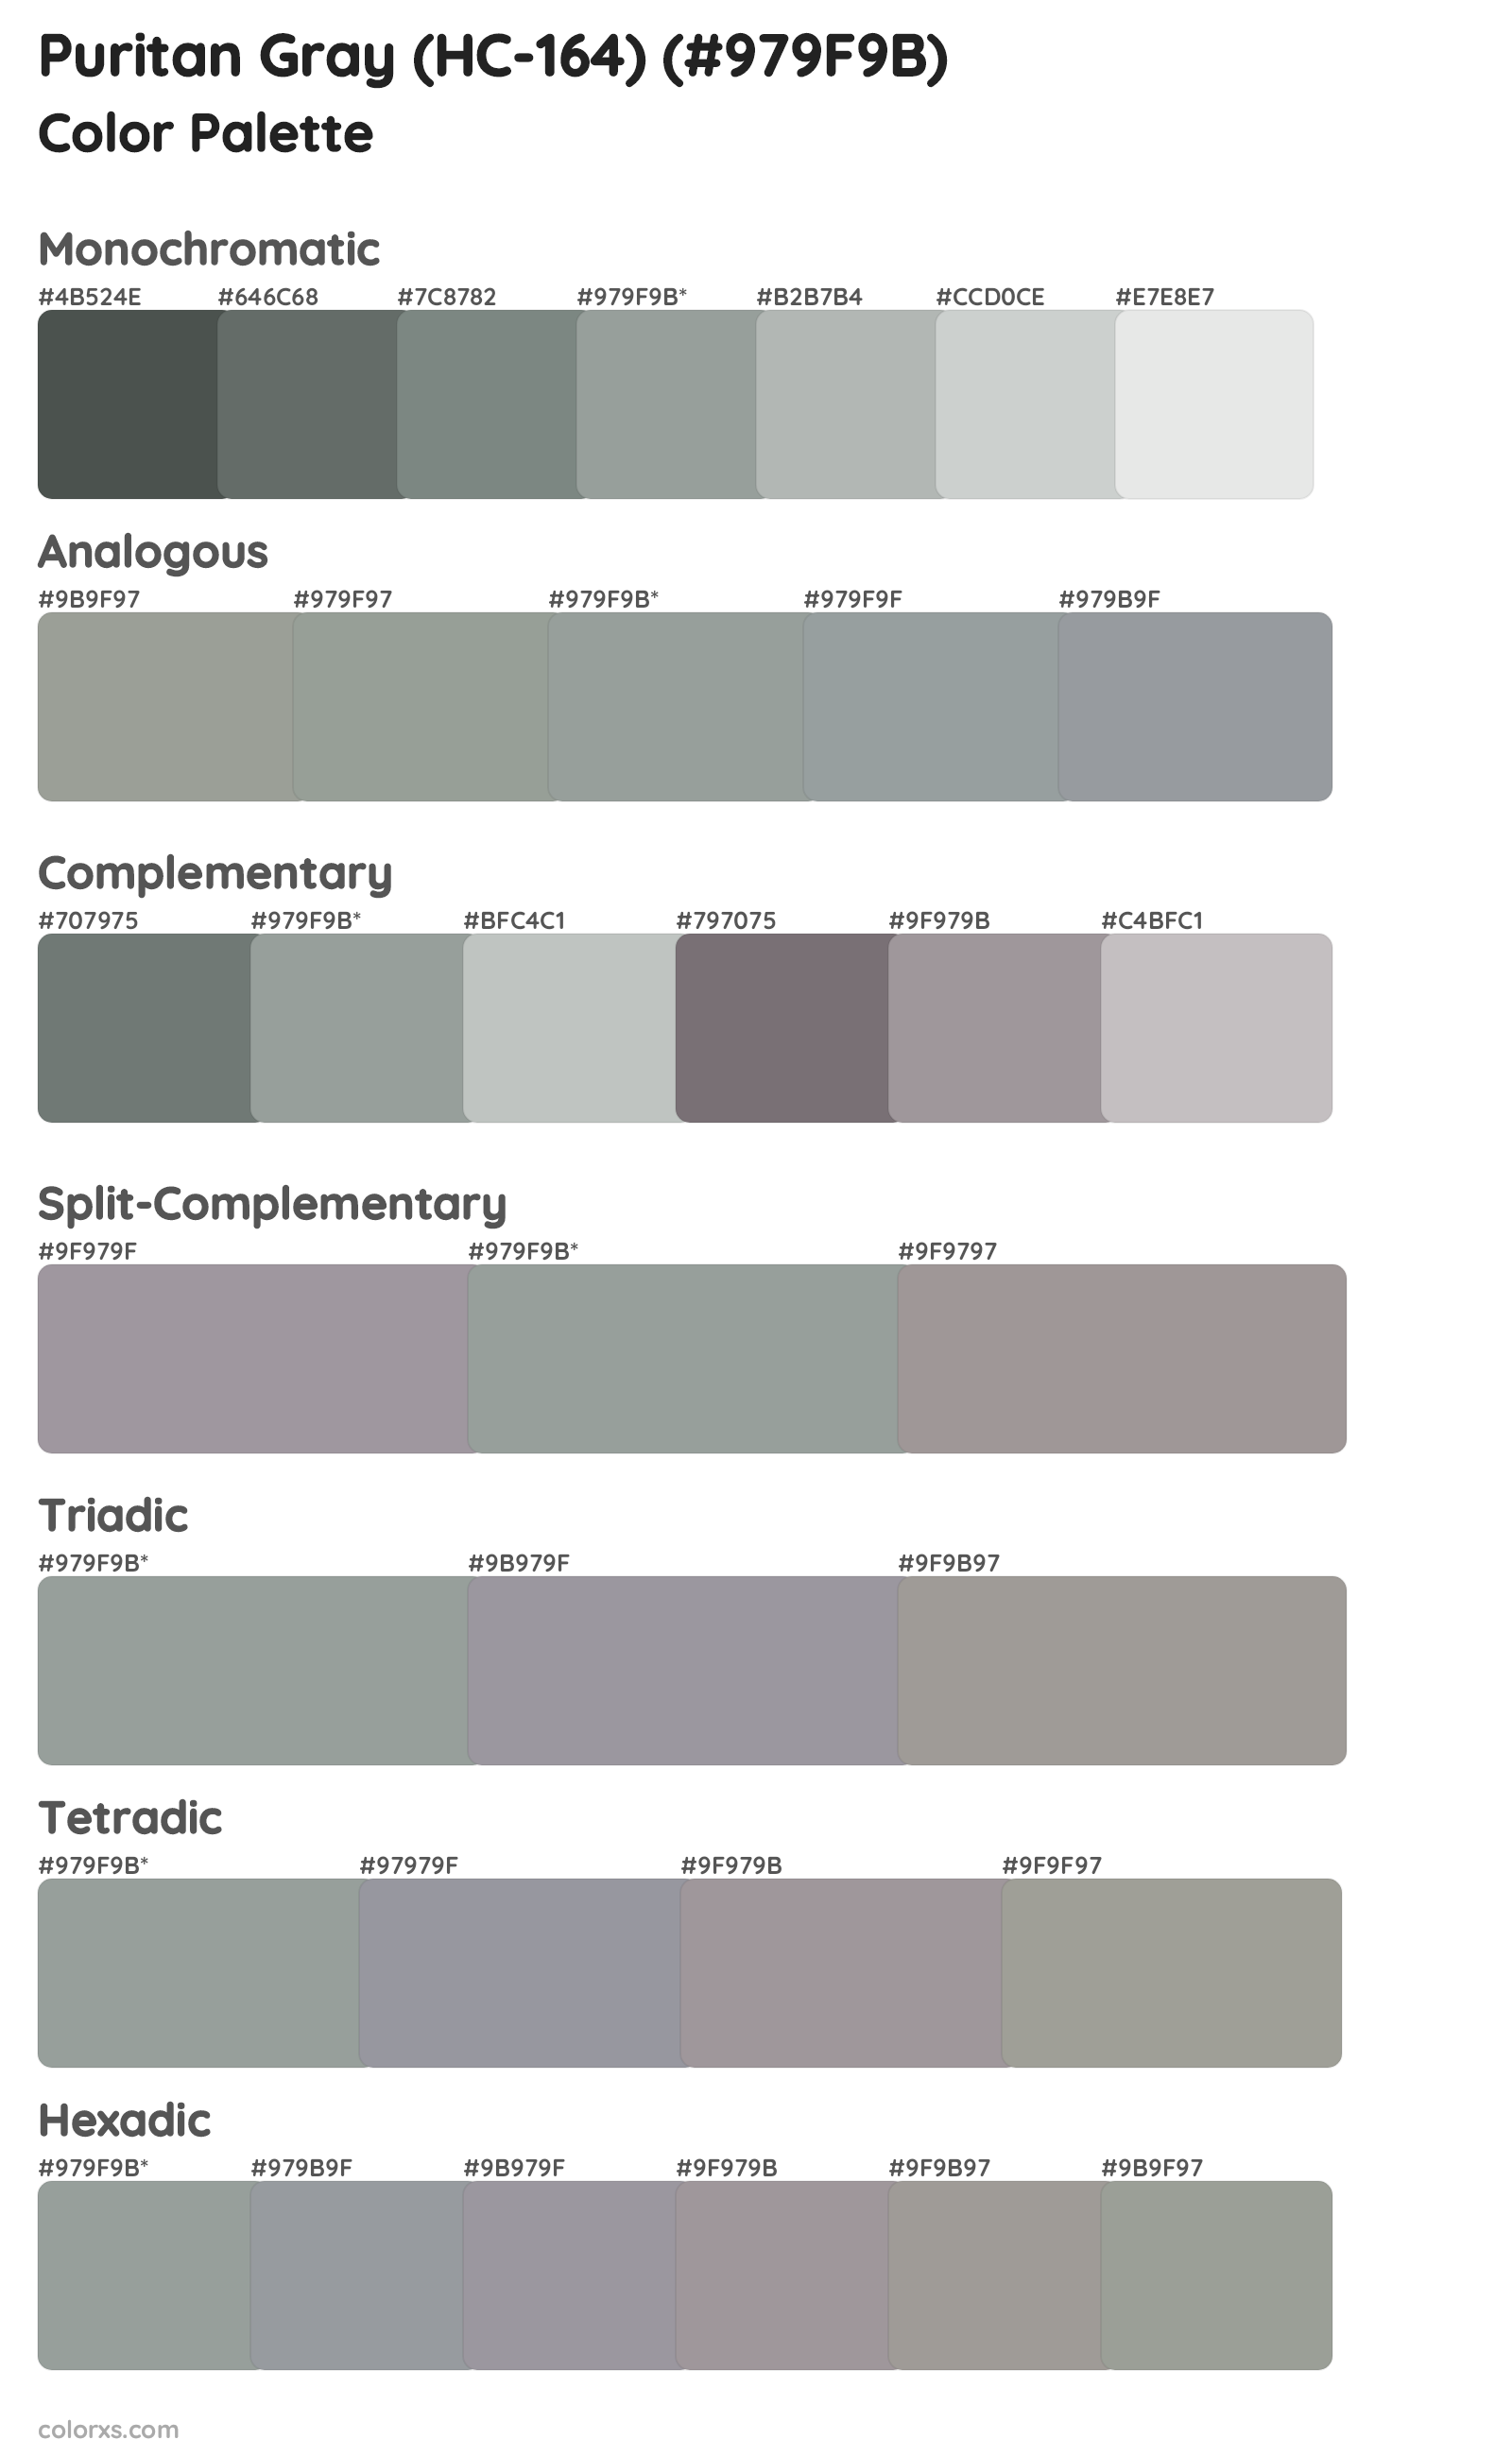 Puritan Gray (HC-164) Color Scheme Palettes